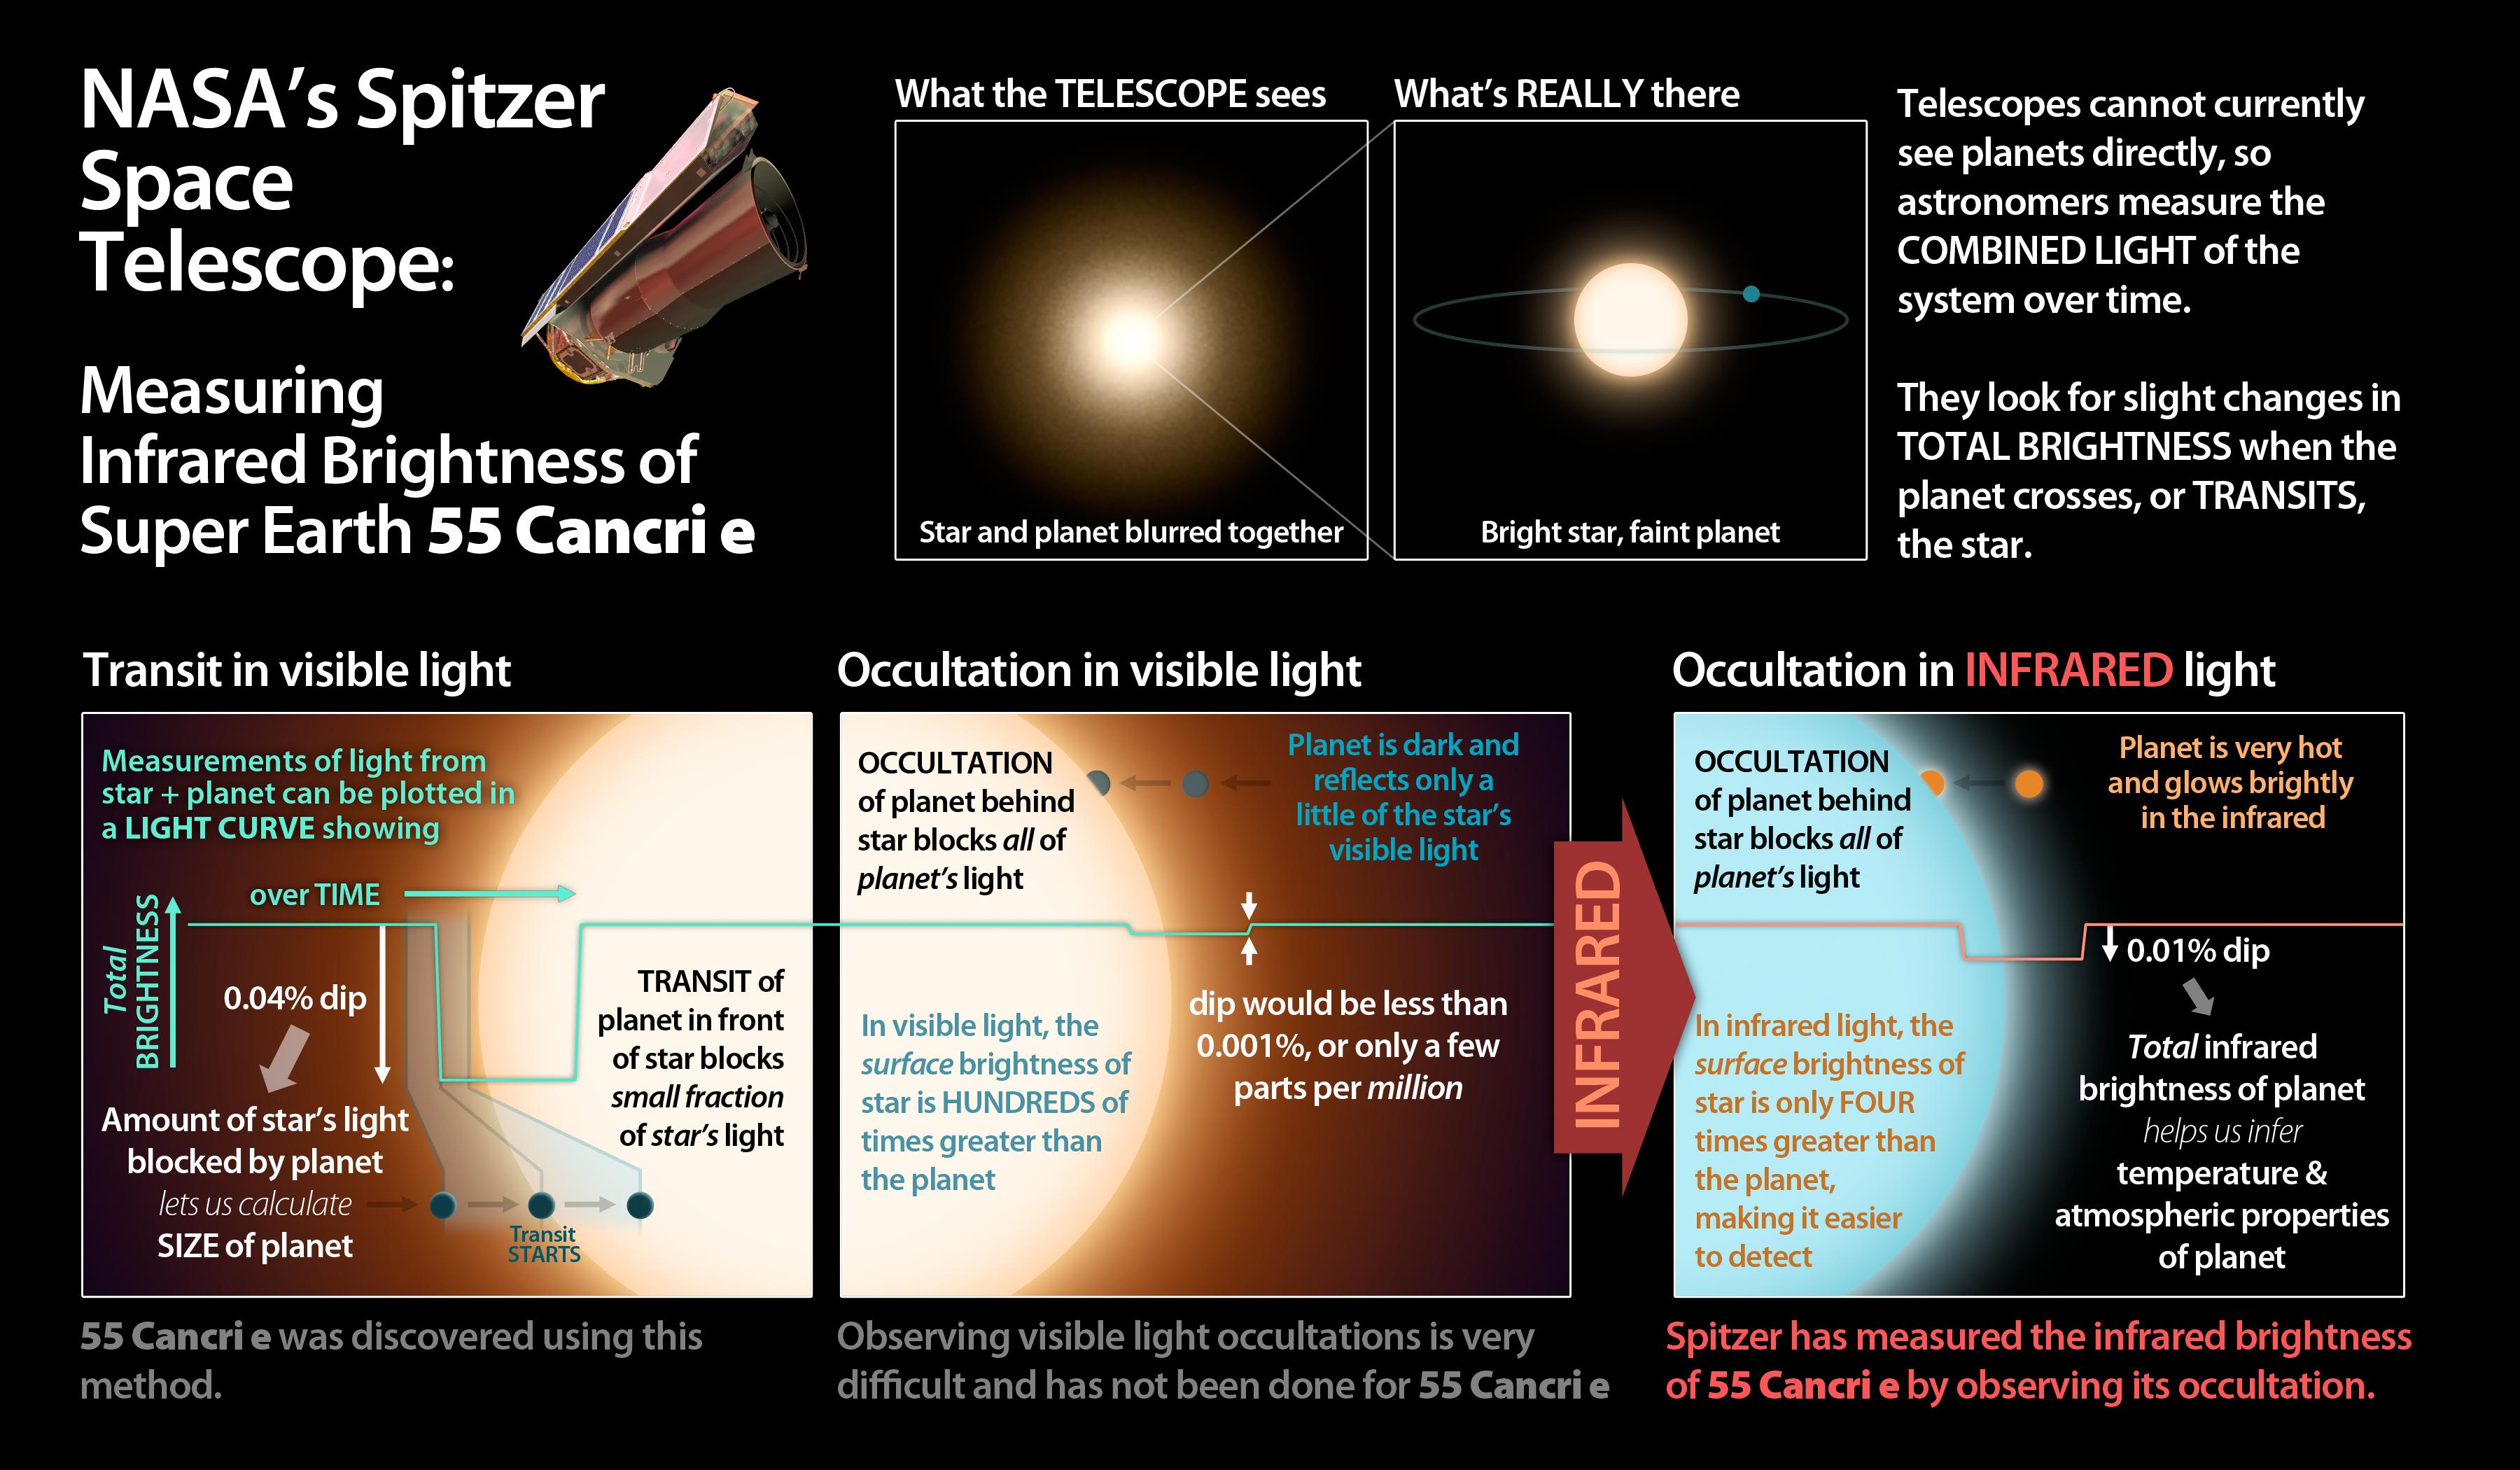 PIA15624: Measuring Brightness of Super Earth 55 Cancri e